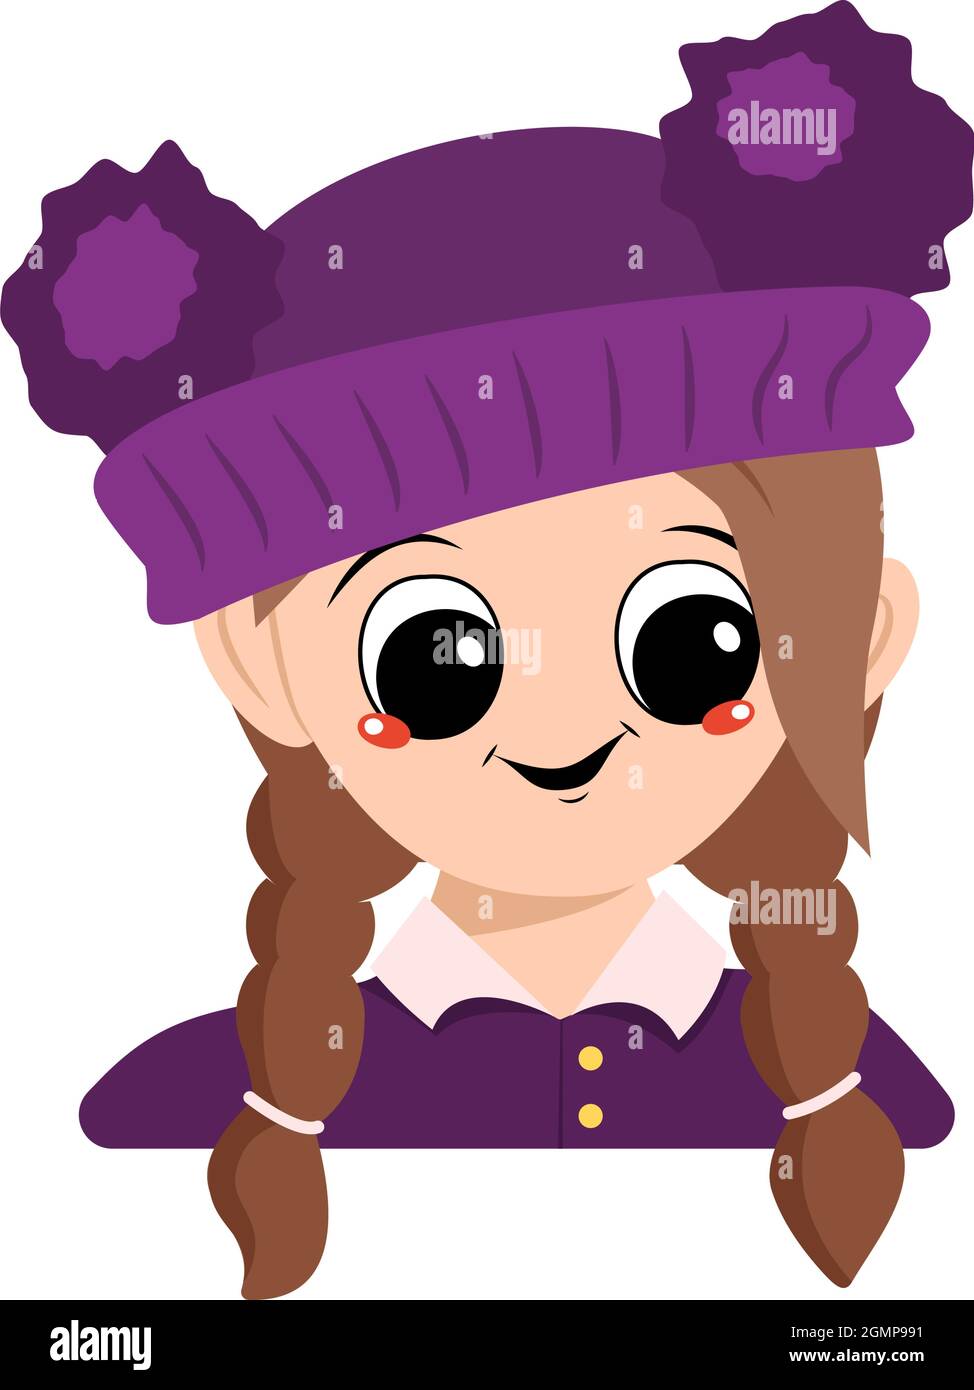 Avatar d'une fille avec de grands yeux et un grand sourire heureux dans un chapeau violet avec un pompon. Tête d'un enfant avec un visage joyeux Illustration de Vecteur